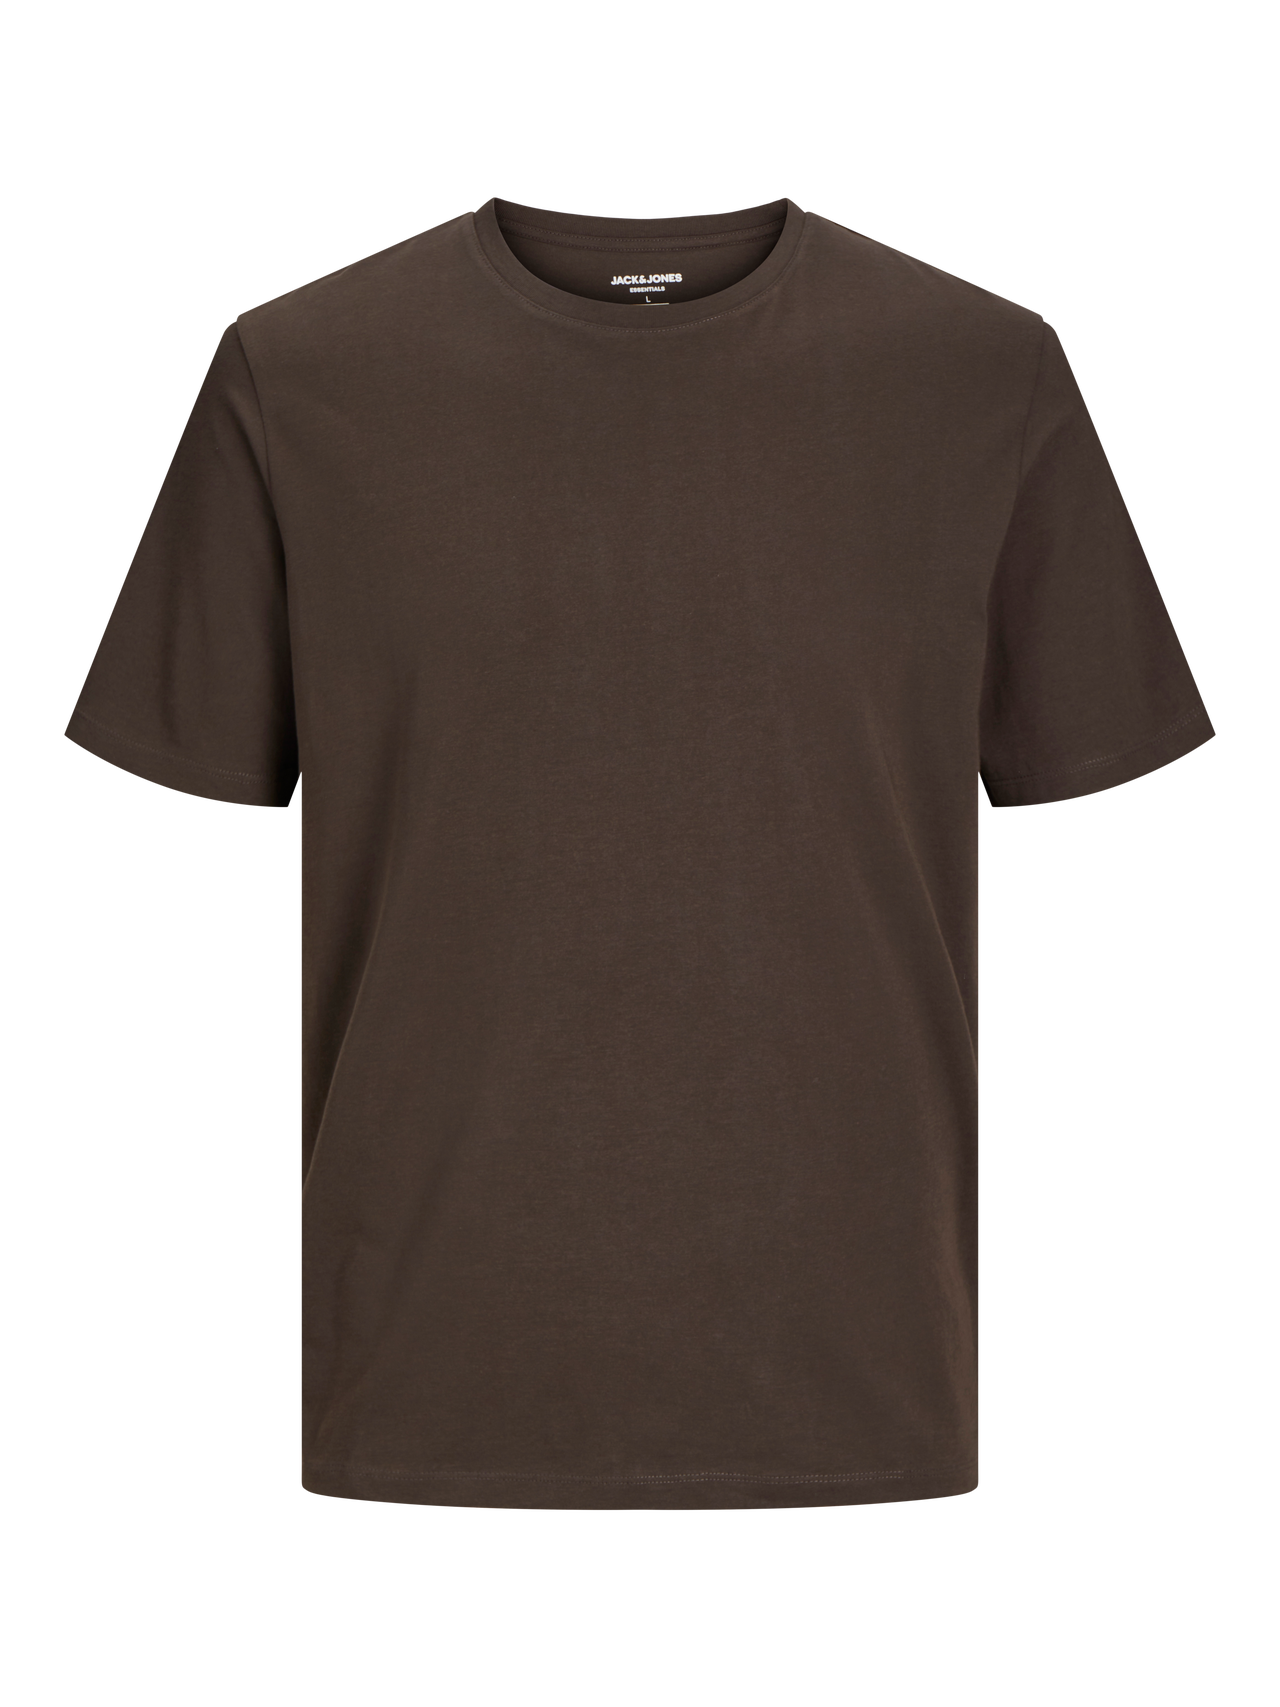 Jack & Jones T-shirt Liso Decote Redondo -Mulch - 12156101